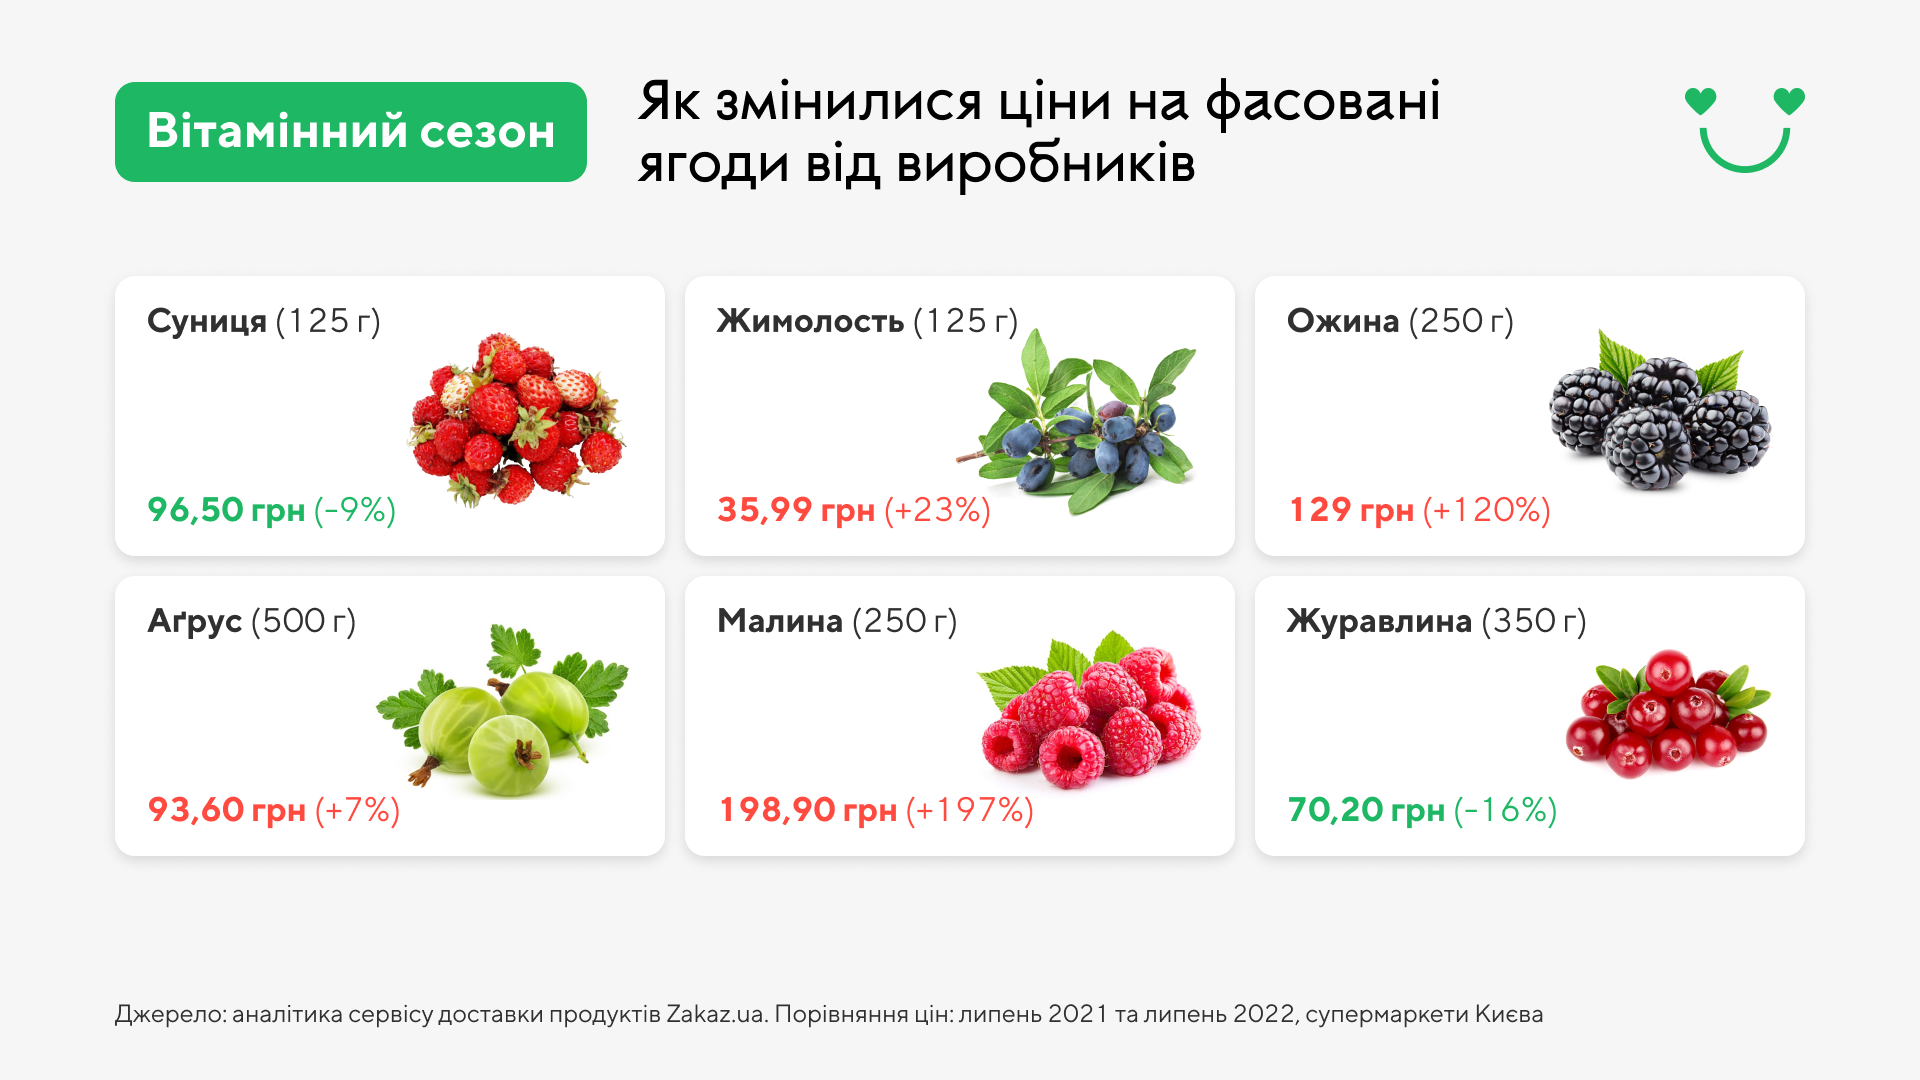 Цены на ягодыГрафика: Zakaz.ua